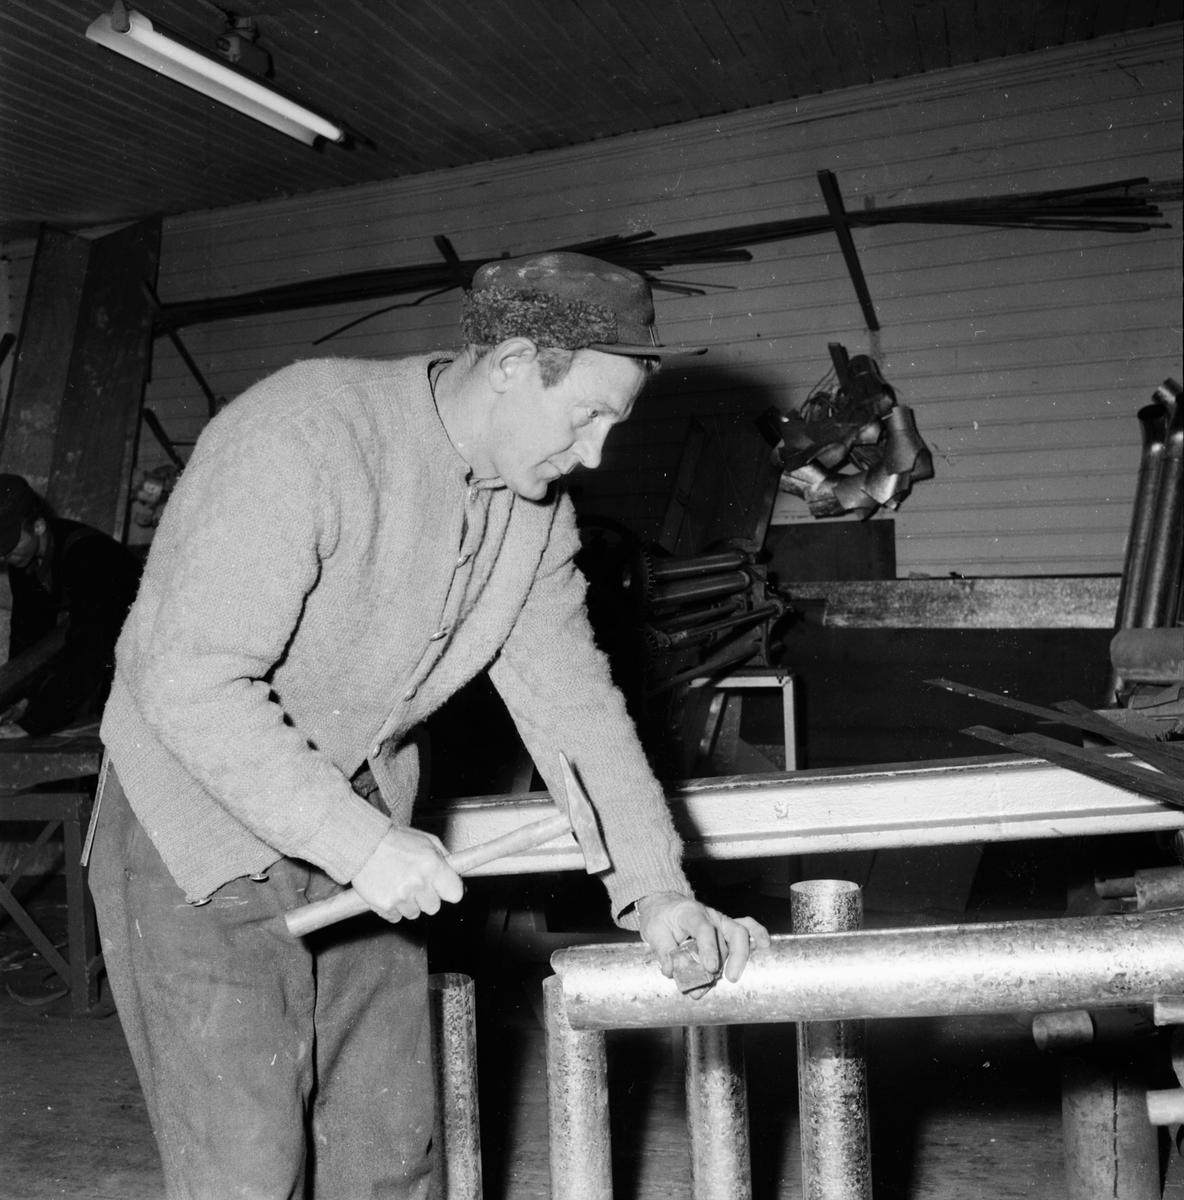 Plåtslagare G.E Eklund.
1957